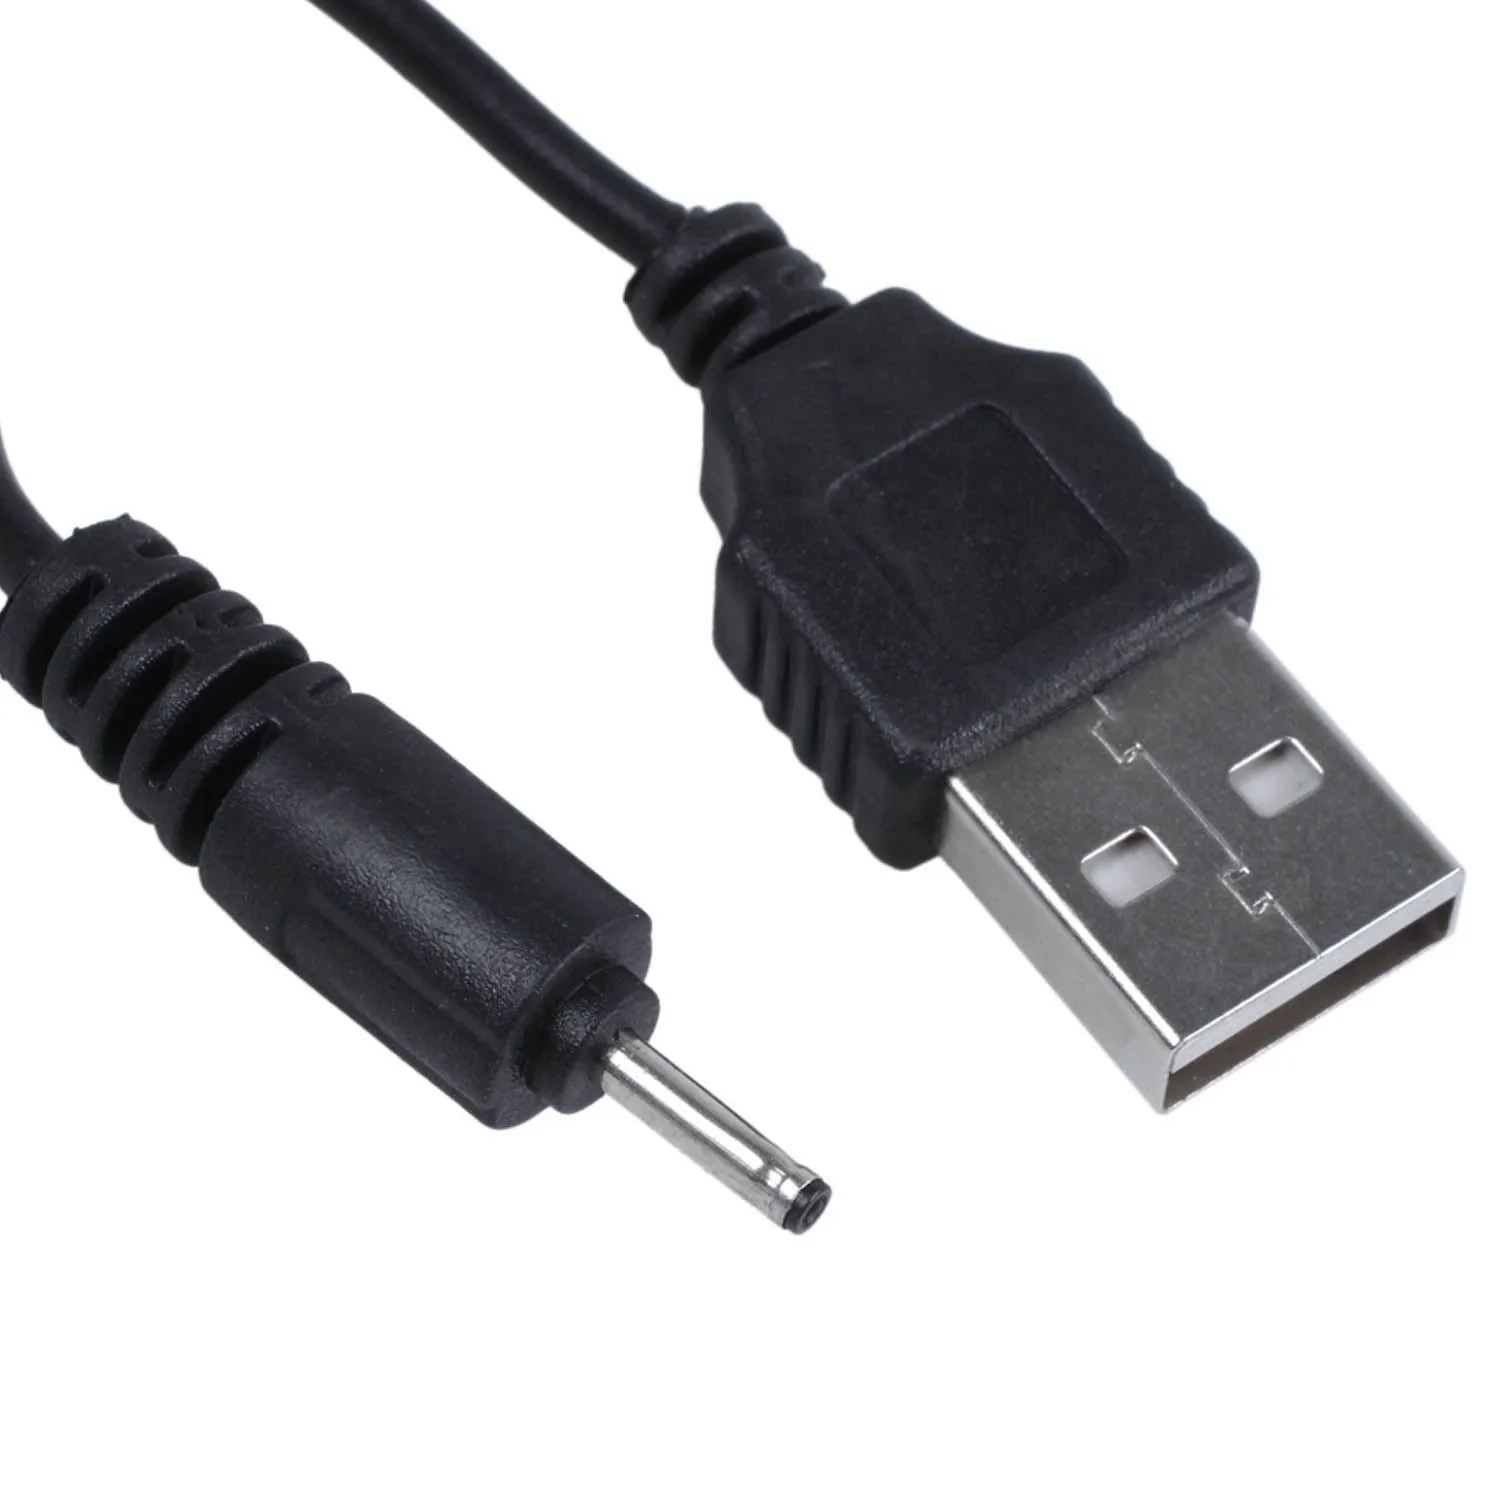 USB кабель 2.0MM для зарядки Nokia 6101 3250 6070 6111 6270 6280 N70 6300 7500 1200 5530 6070 6111